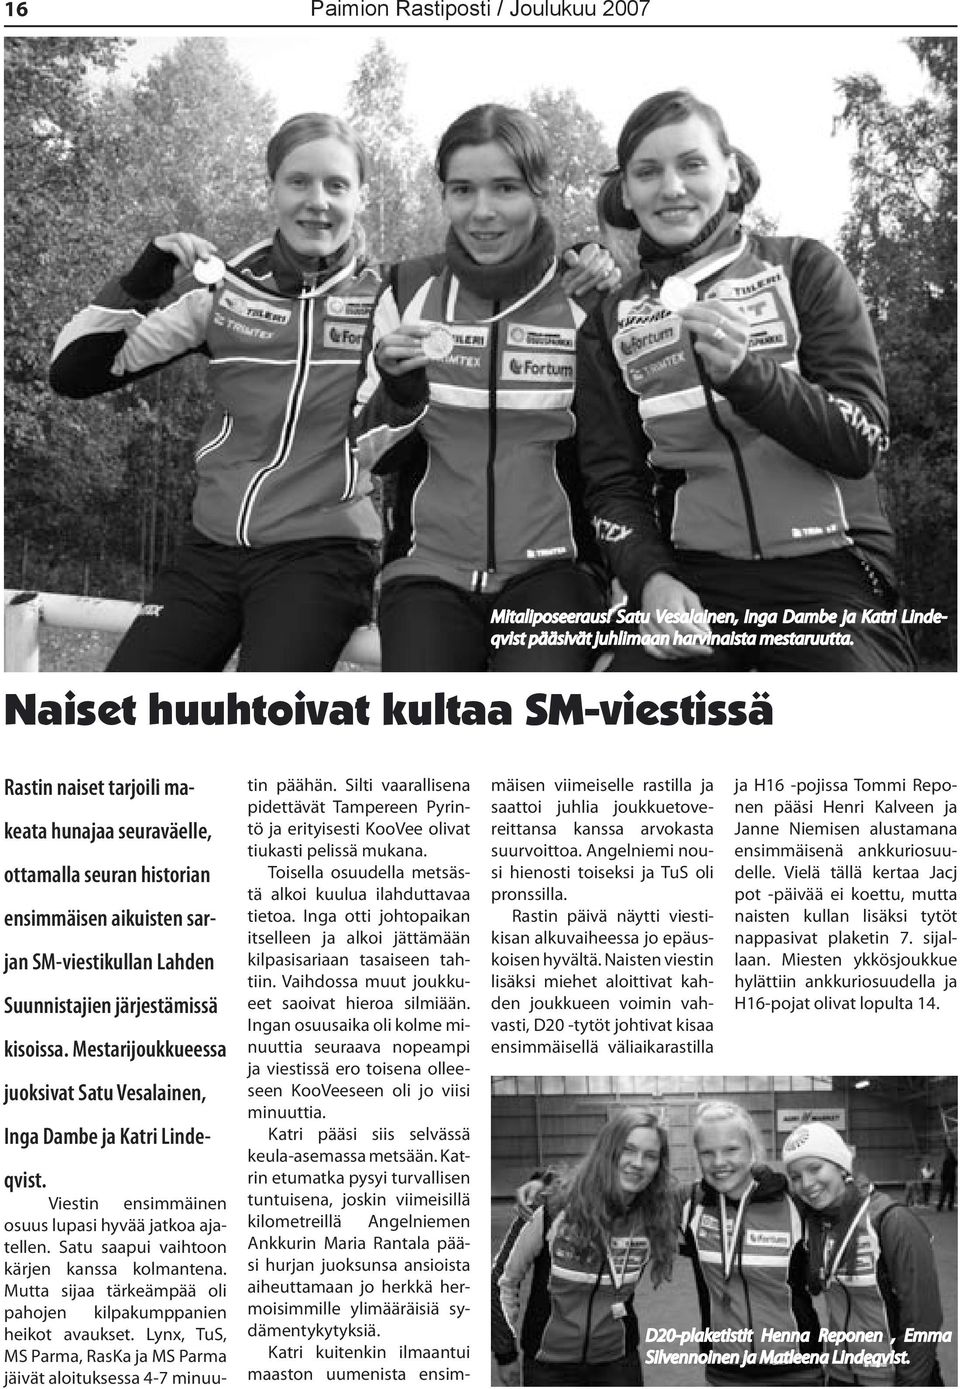 kisoissa. Mestarijoukkueessa juoksivat Satu Vesalainen, Inga Dambe ja Katri Lindeqvist. Viestin ensimmäinen osuus lupasi hyvää jatkoa ajatellen. Satu saapui vaihtoon kärjen kanssa kolmantena.